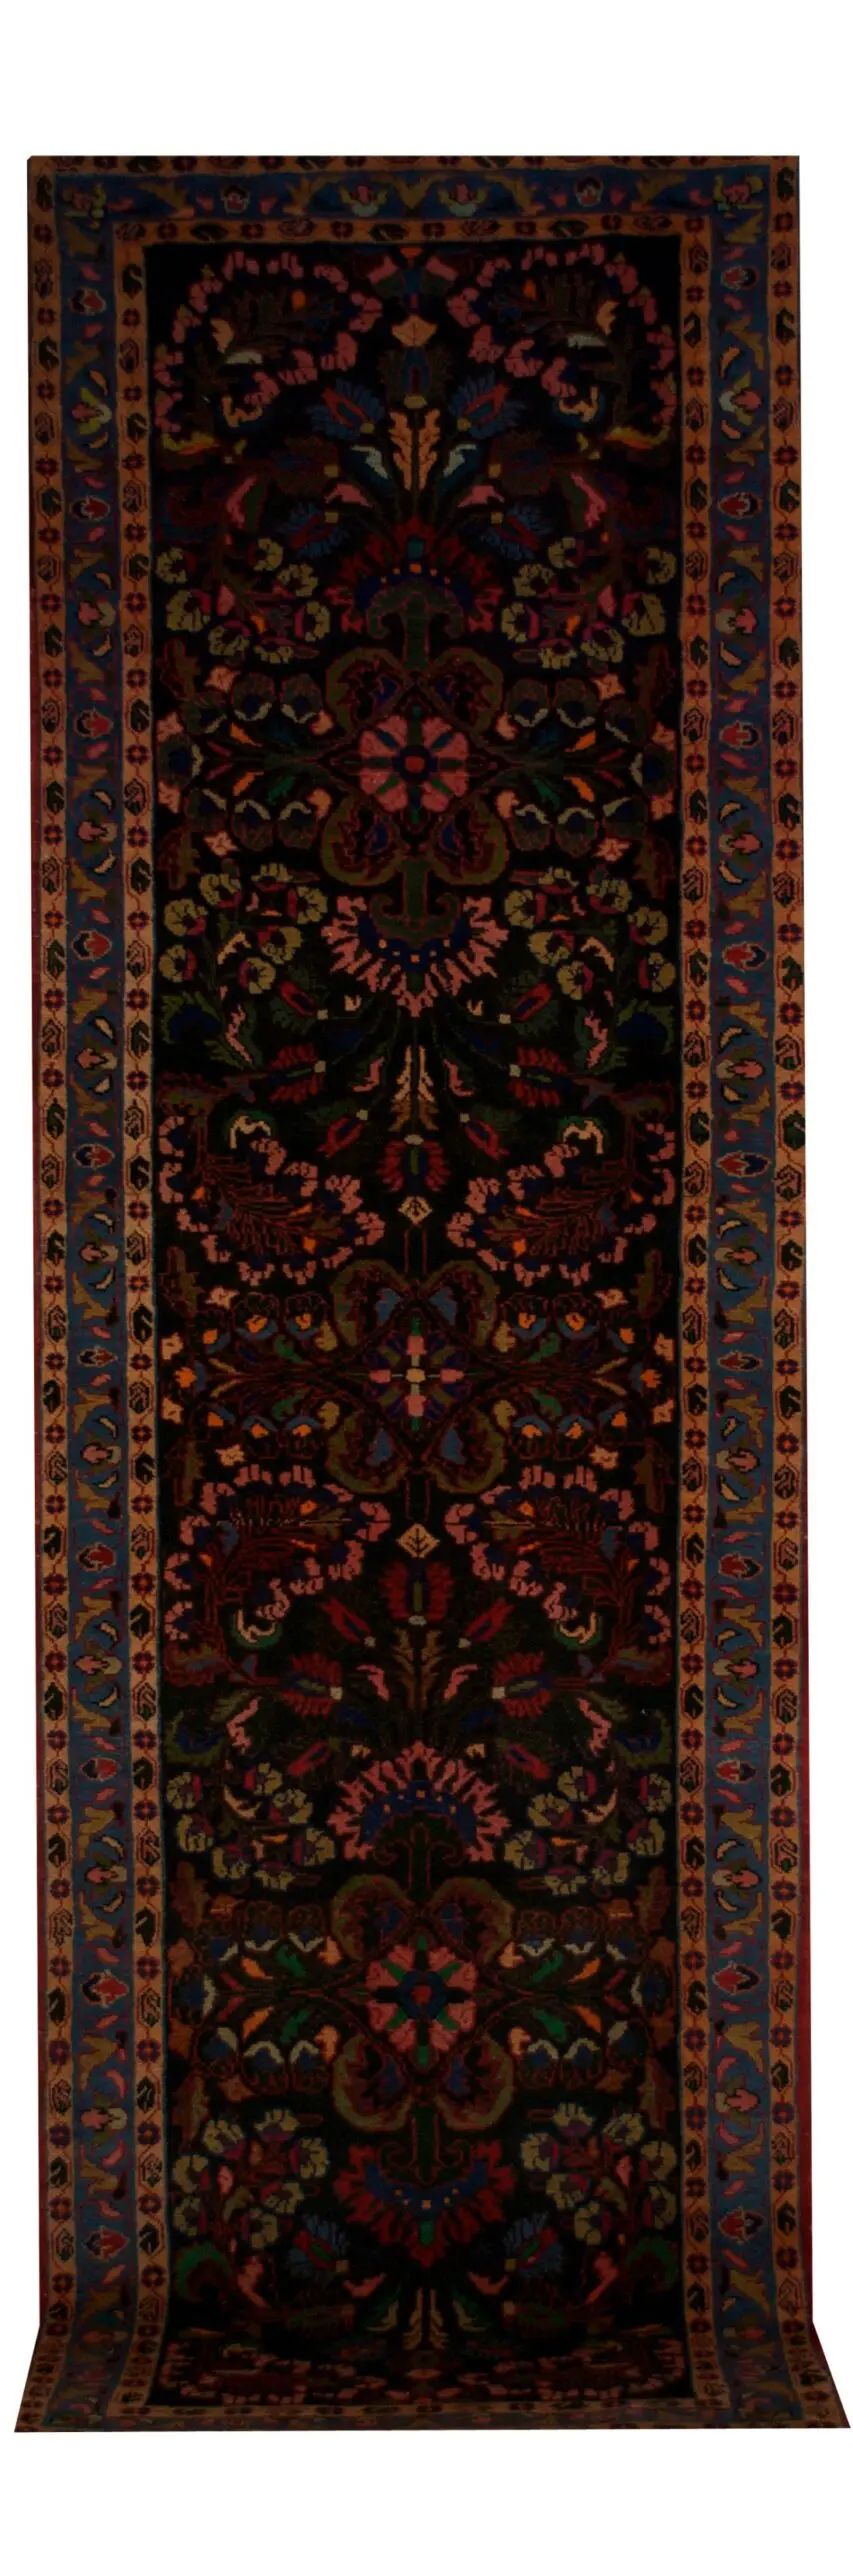 Vintage Persian Bakhtiari runner 3' 6" x 11' - Shabahang Royal Carpet